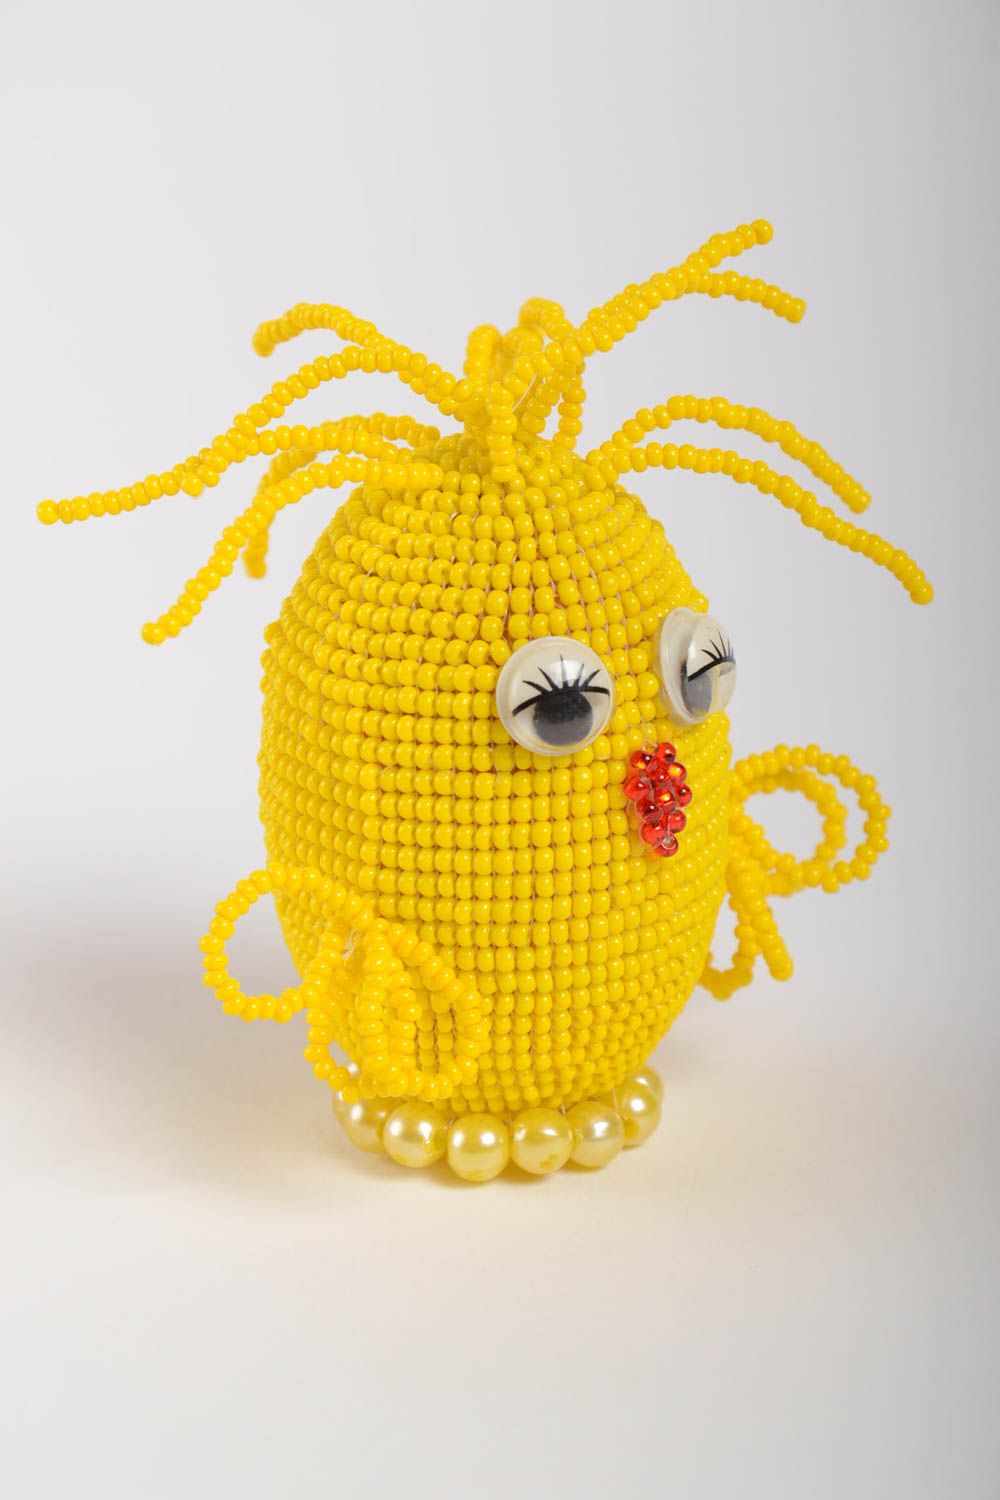 Декоративное яйцо из бисера в виде цыпленка желтое яркое небольшое ручной работы фото 2